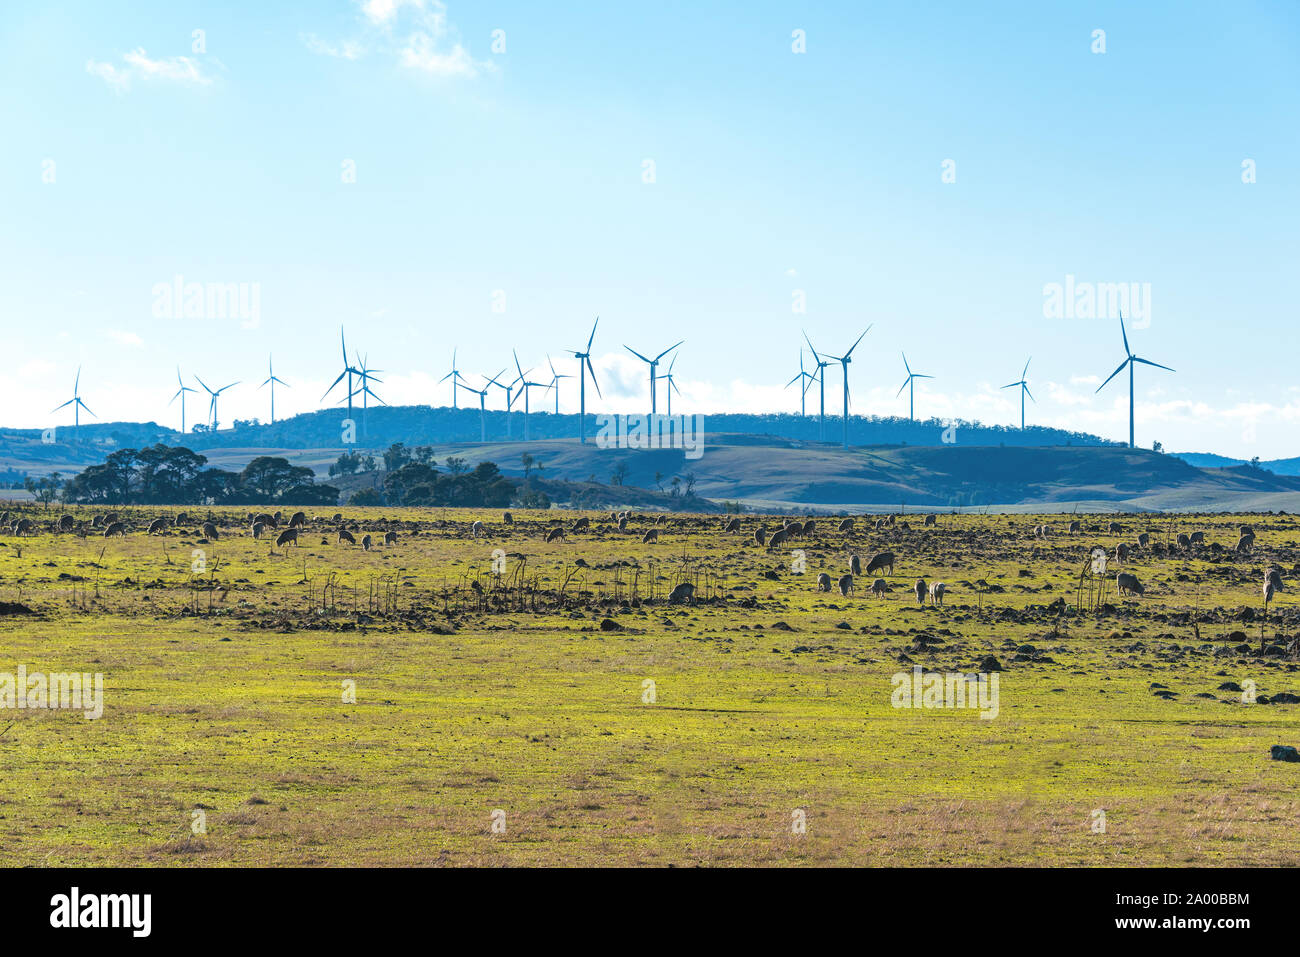 Moulin de l'électricité éolienne avec arrière-plan de campagne. Les terres agricoles et les éoliennes. Myrtleville, NSW, Australie Banque D'Images